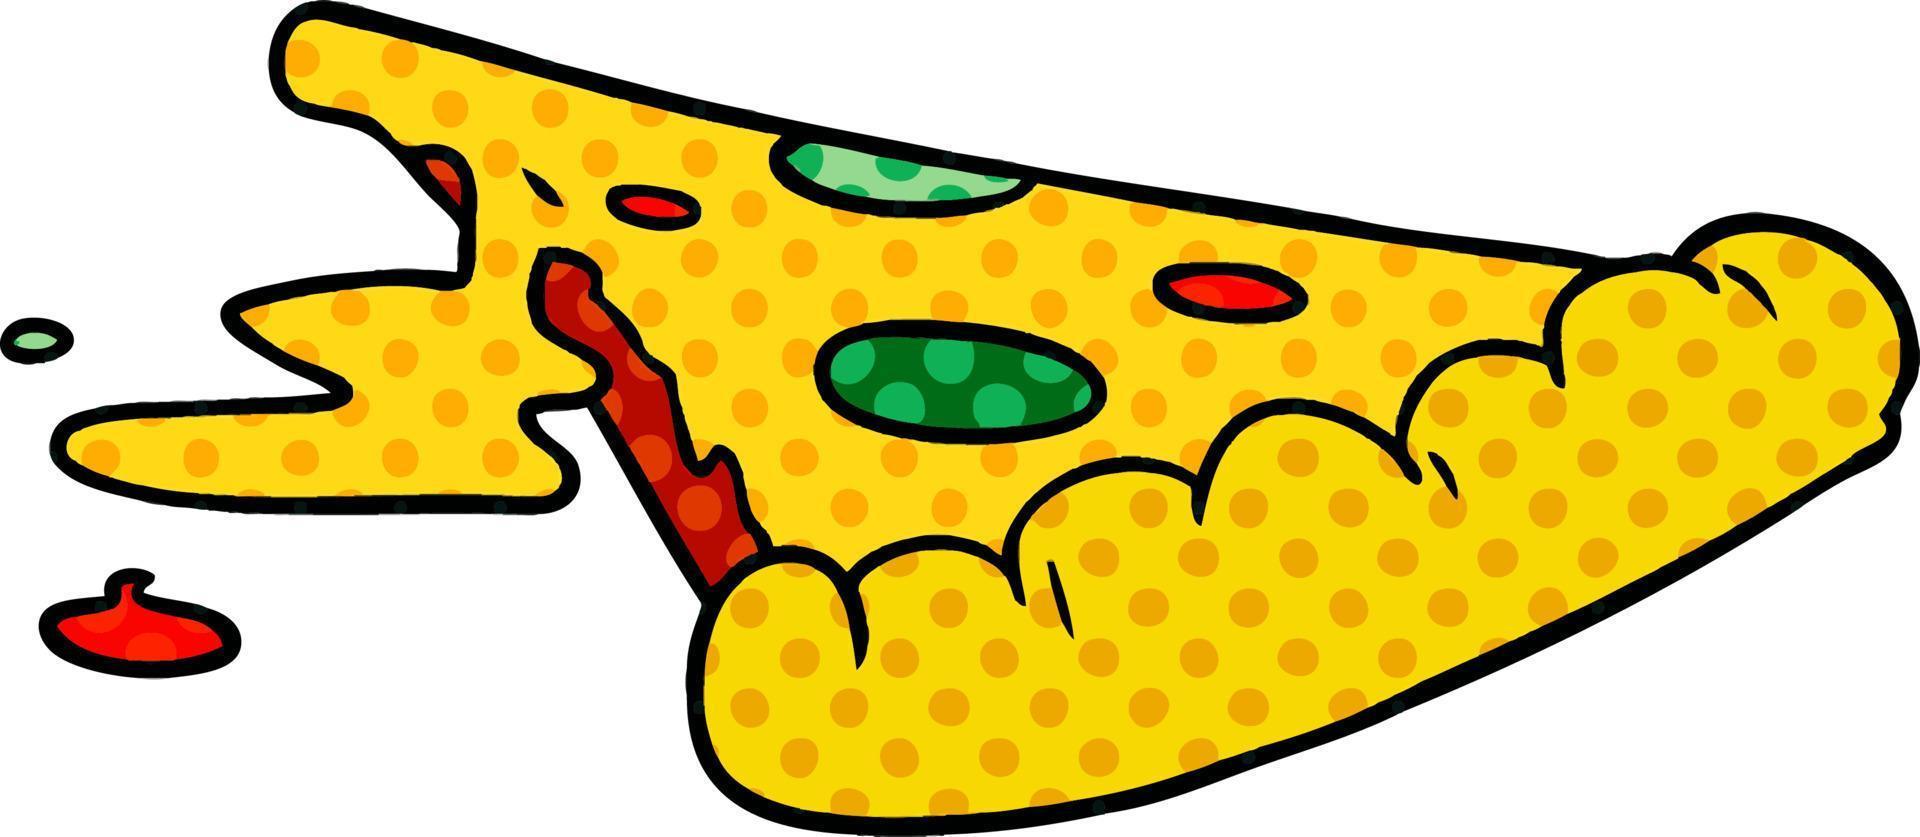 dessin animé doodle d'une tranche de pizza vecteur